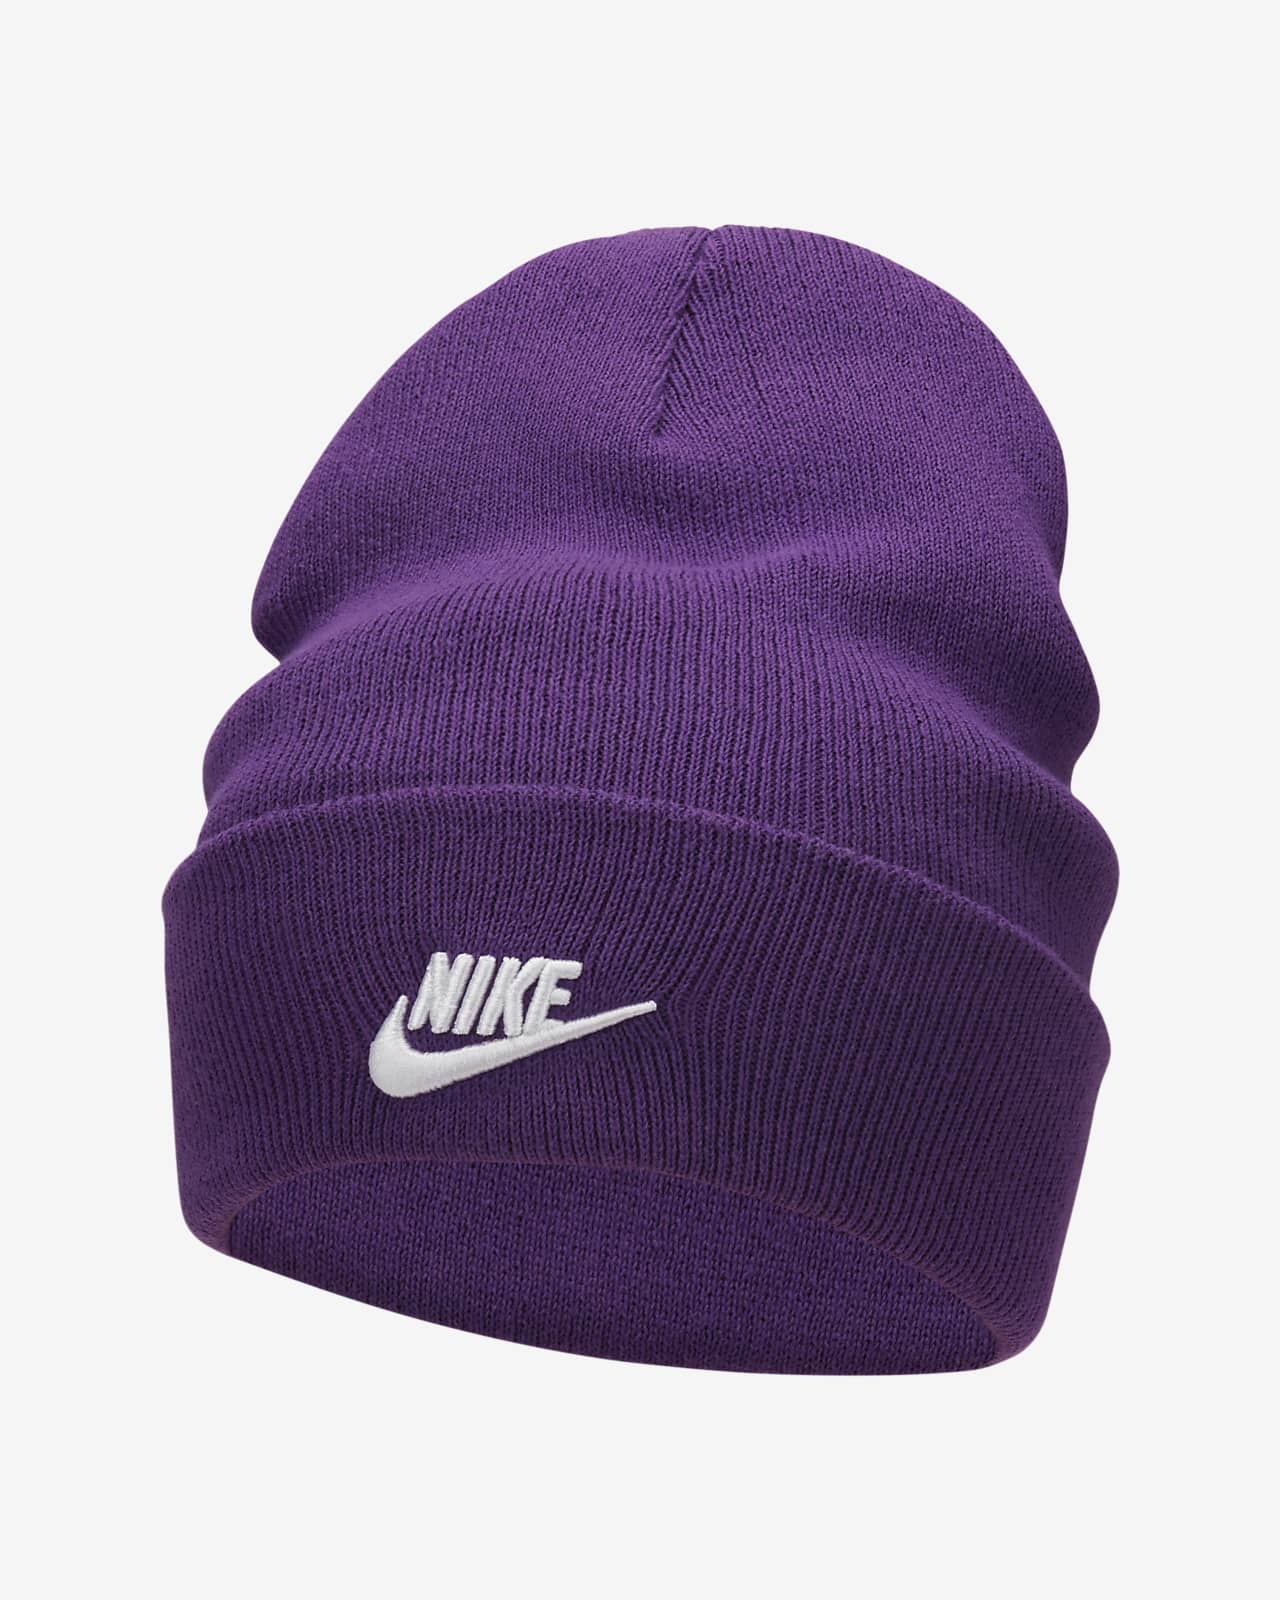 Les meilleurs bonnets et casquettes Nike pour rester au chaud. Nike FR